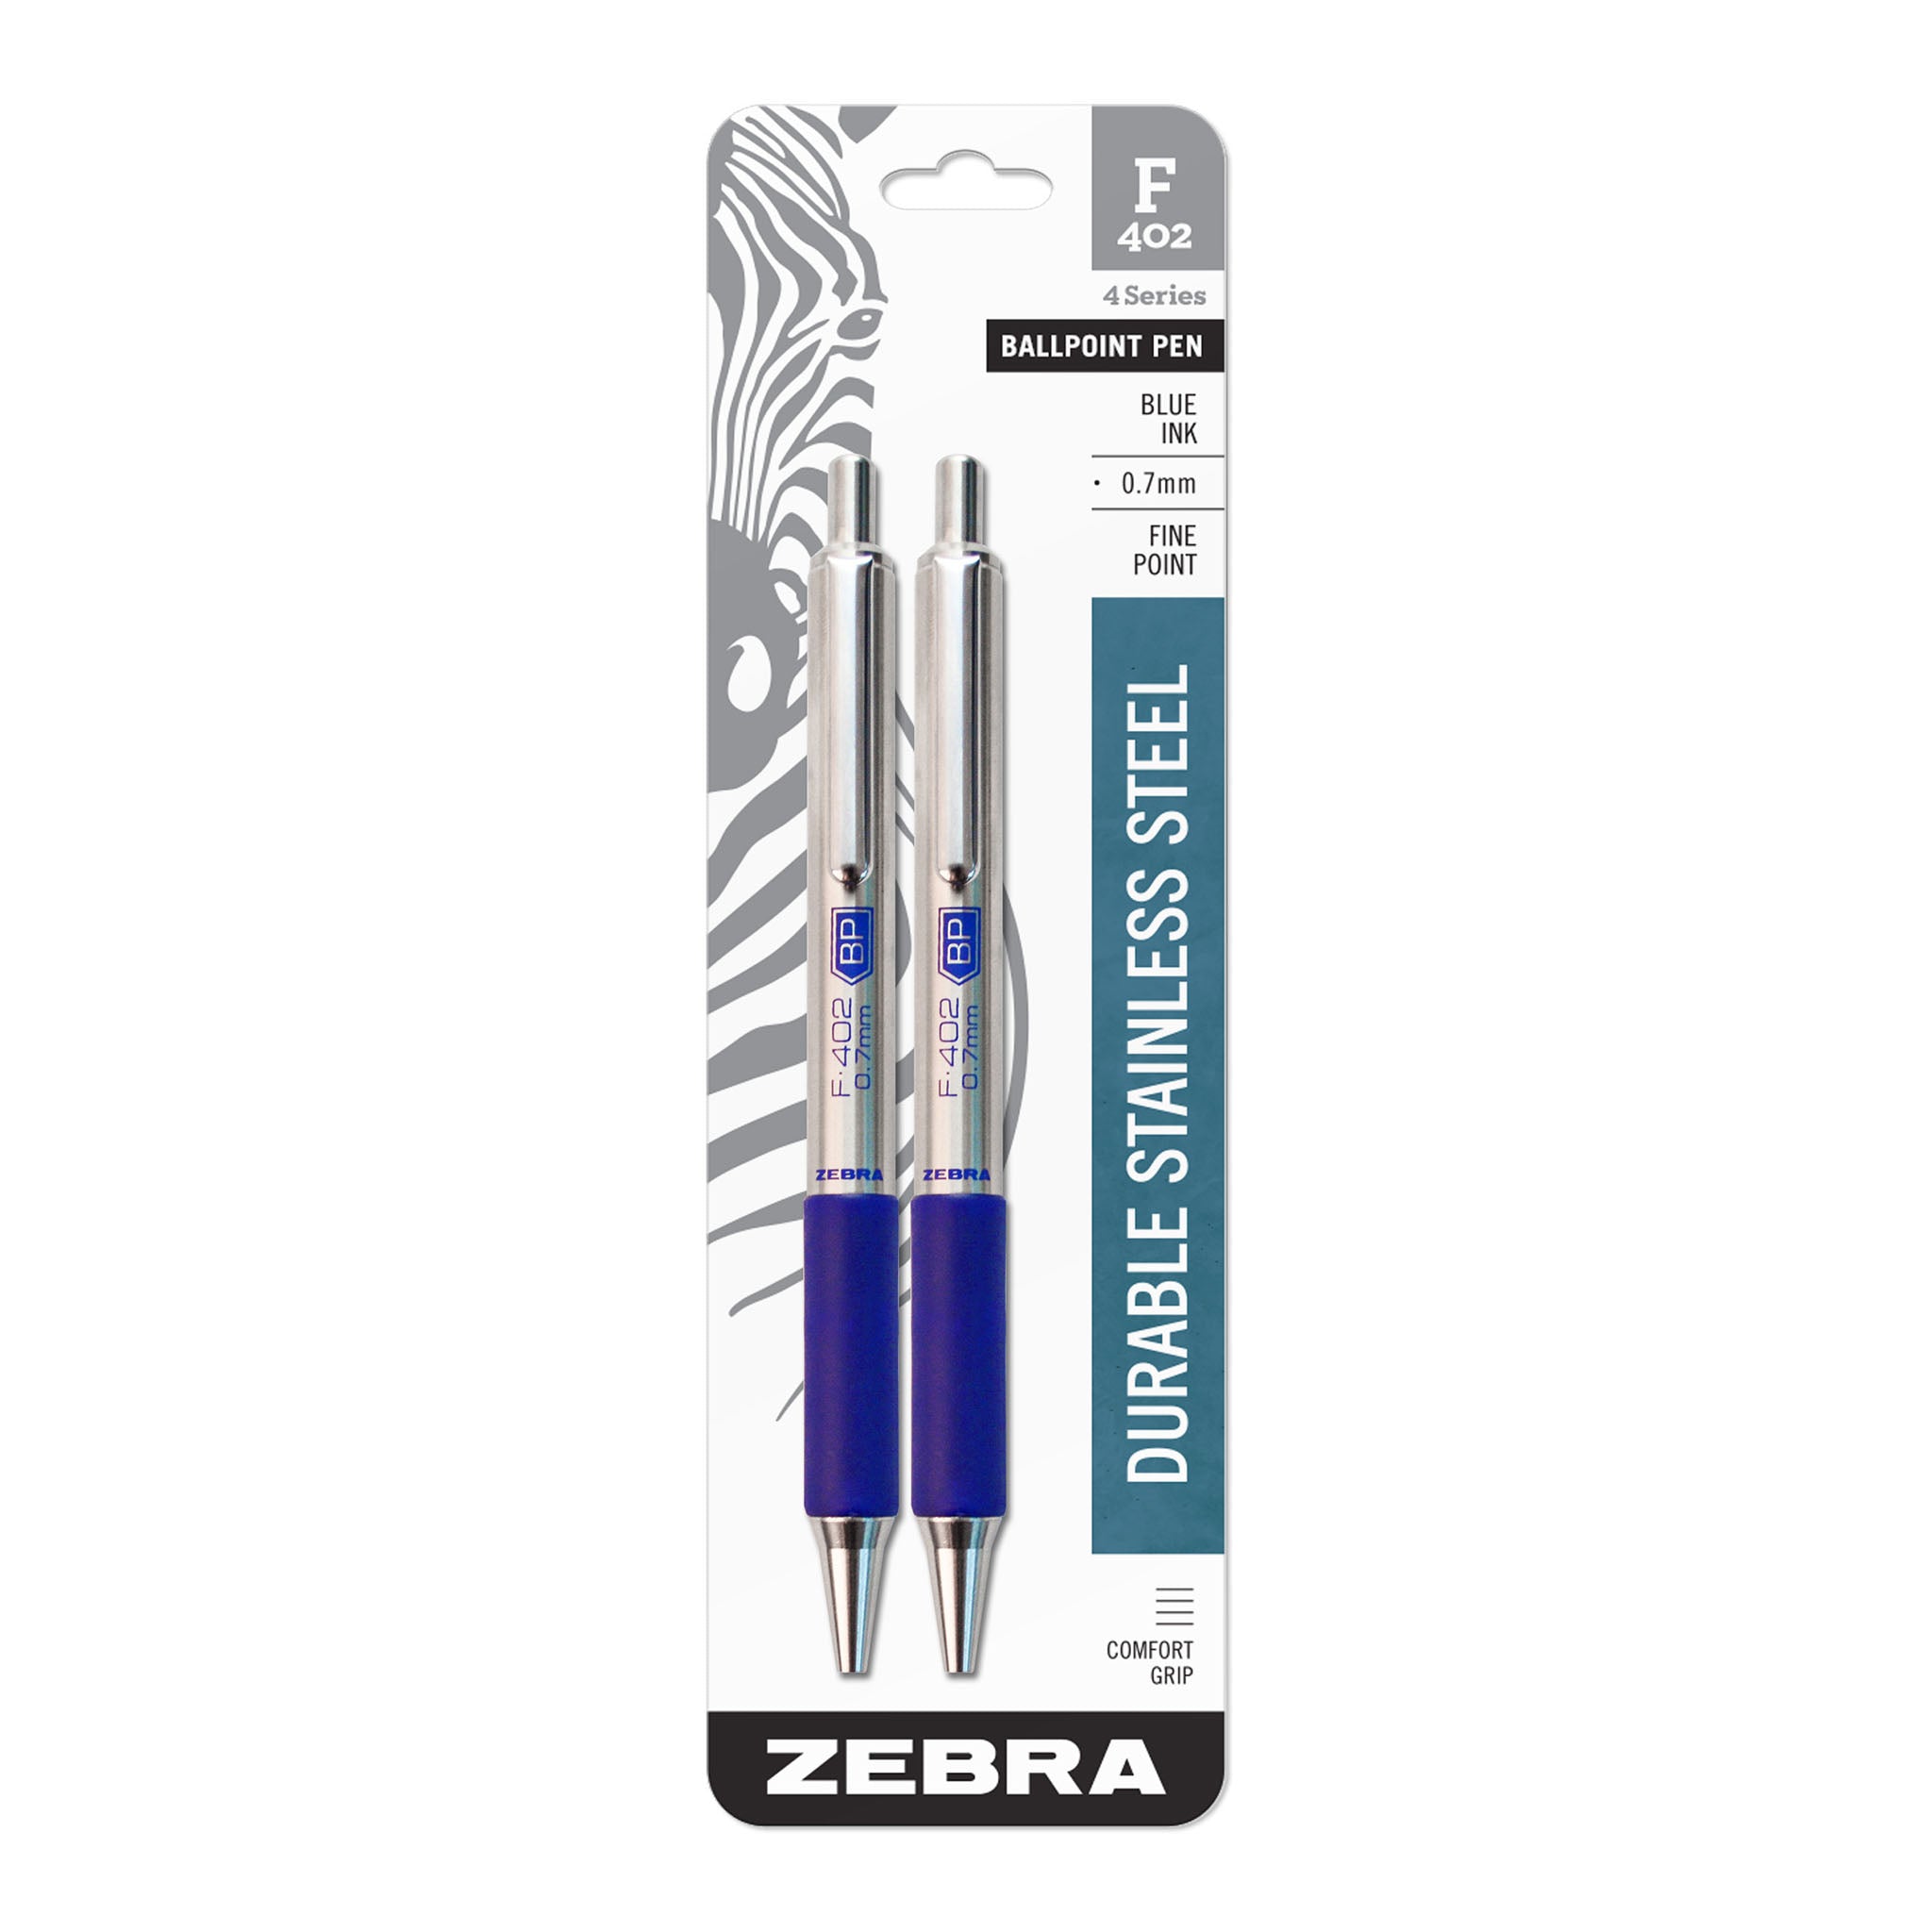 Zebra Pen F-402, Stainless Steel Pens - User Review 